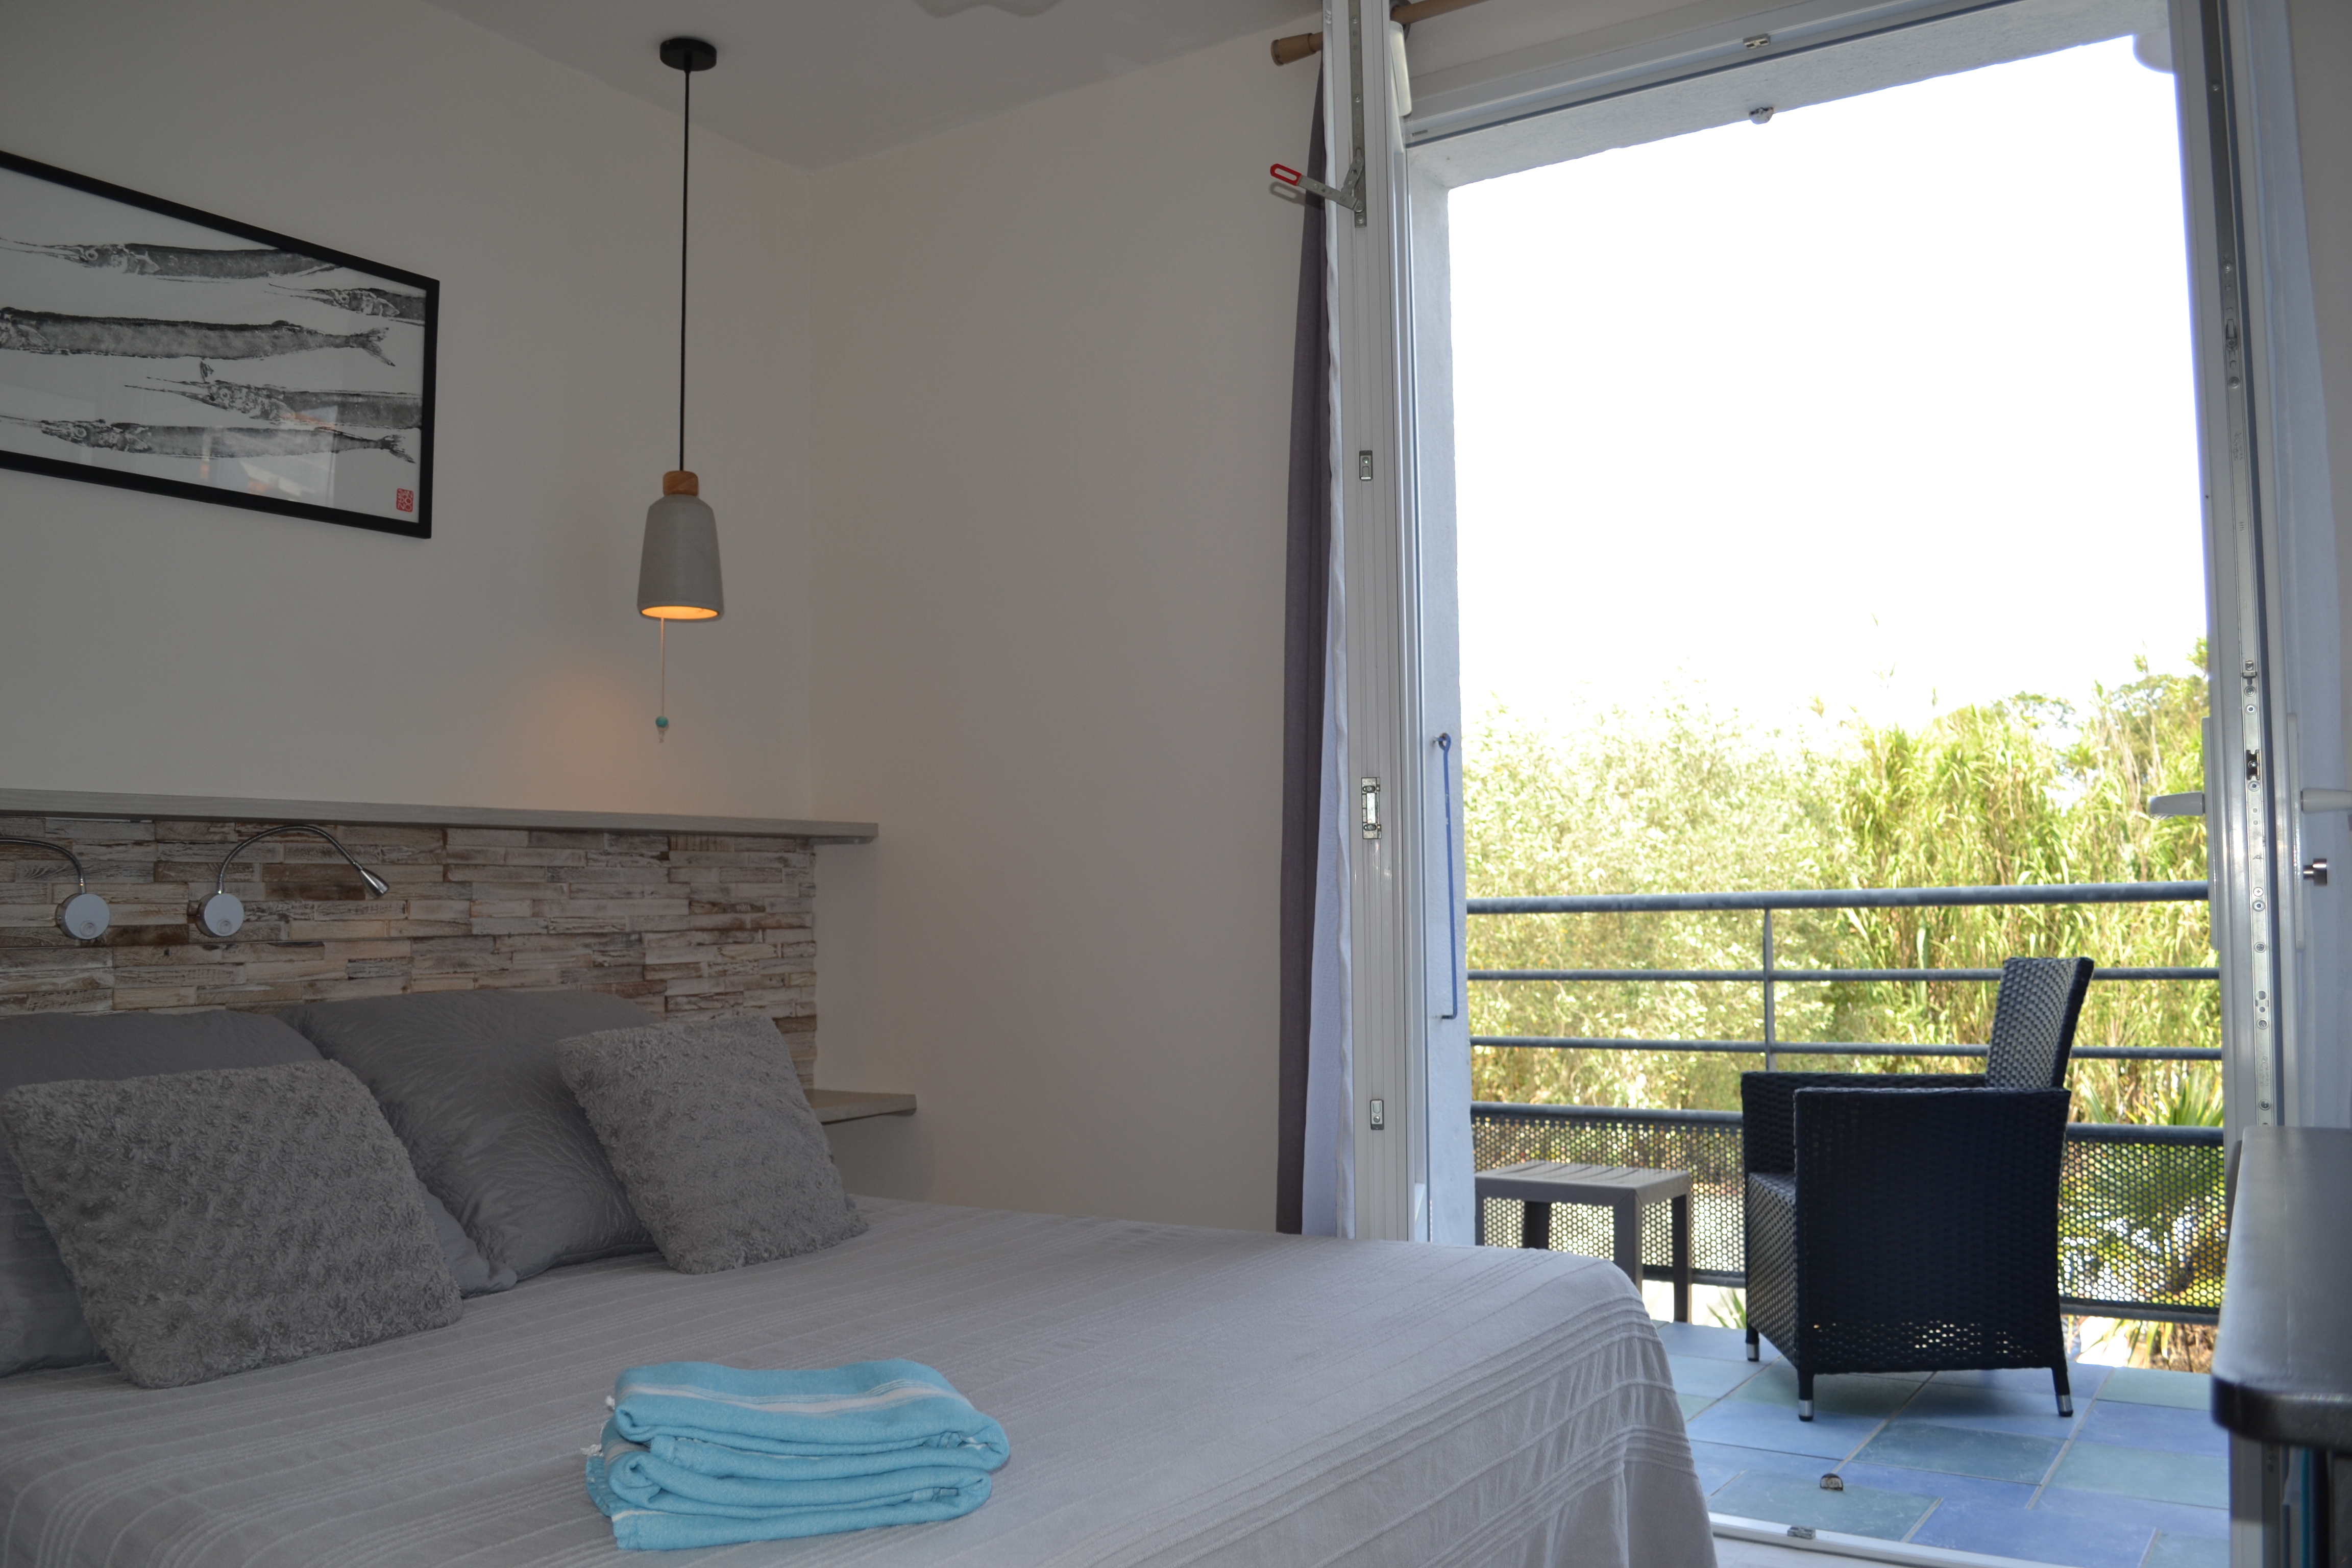 Chambre Solo/Duo terrasse 2 personnes à l'Atlantic Hôtel 3 étoiles sur l'île d'Oléron en Charente Maritime